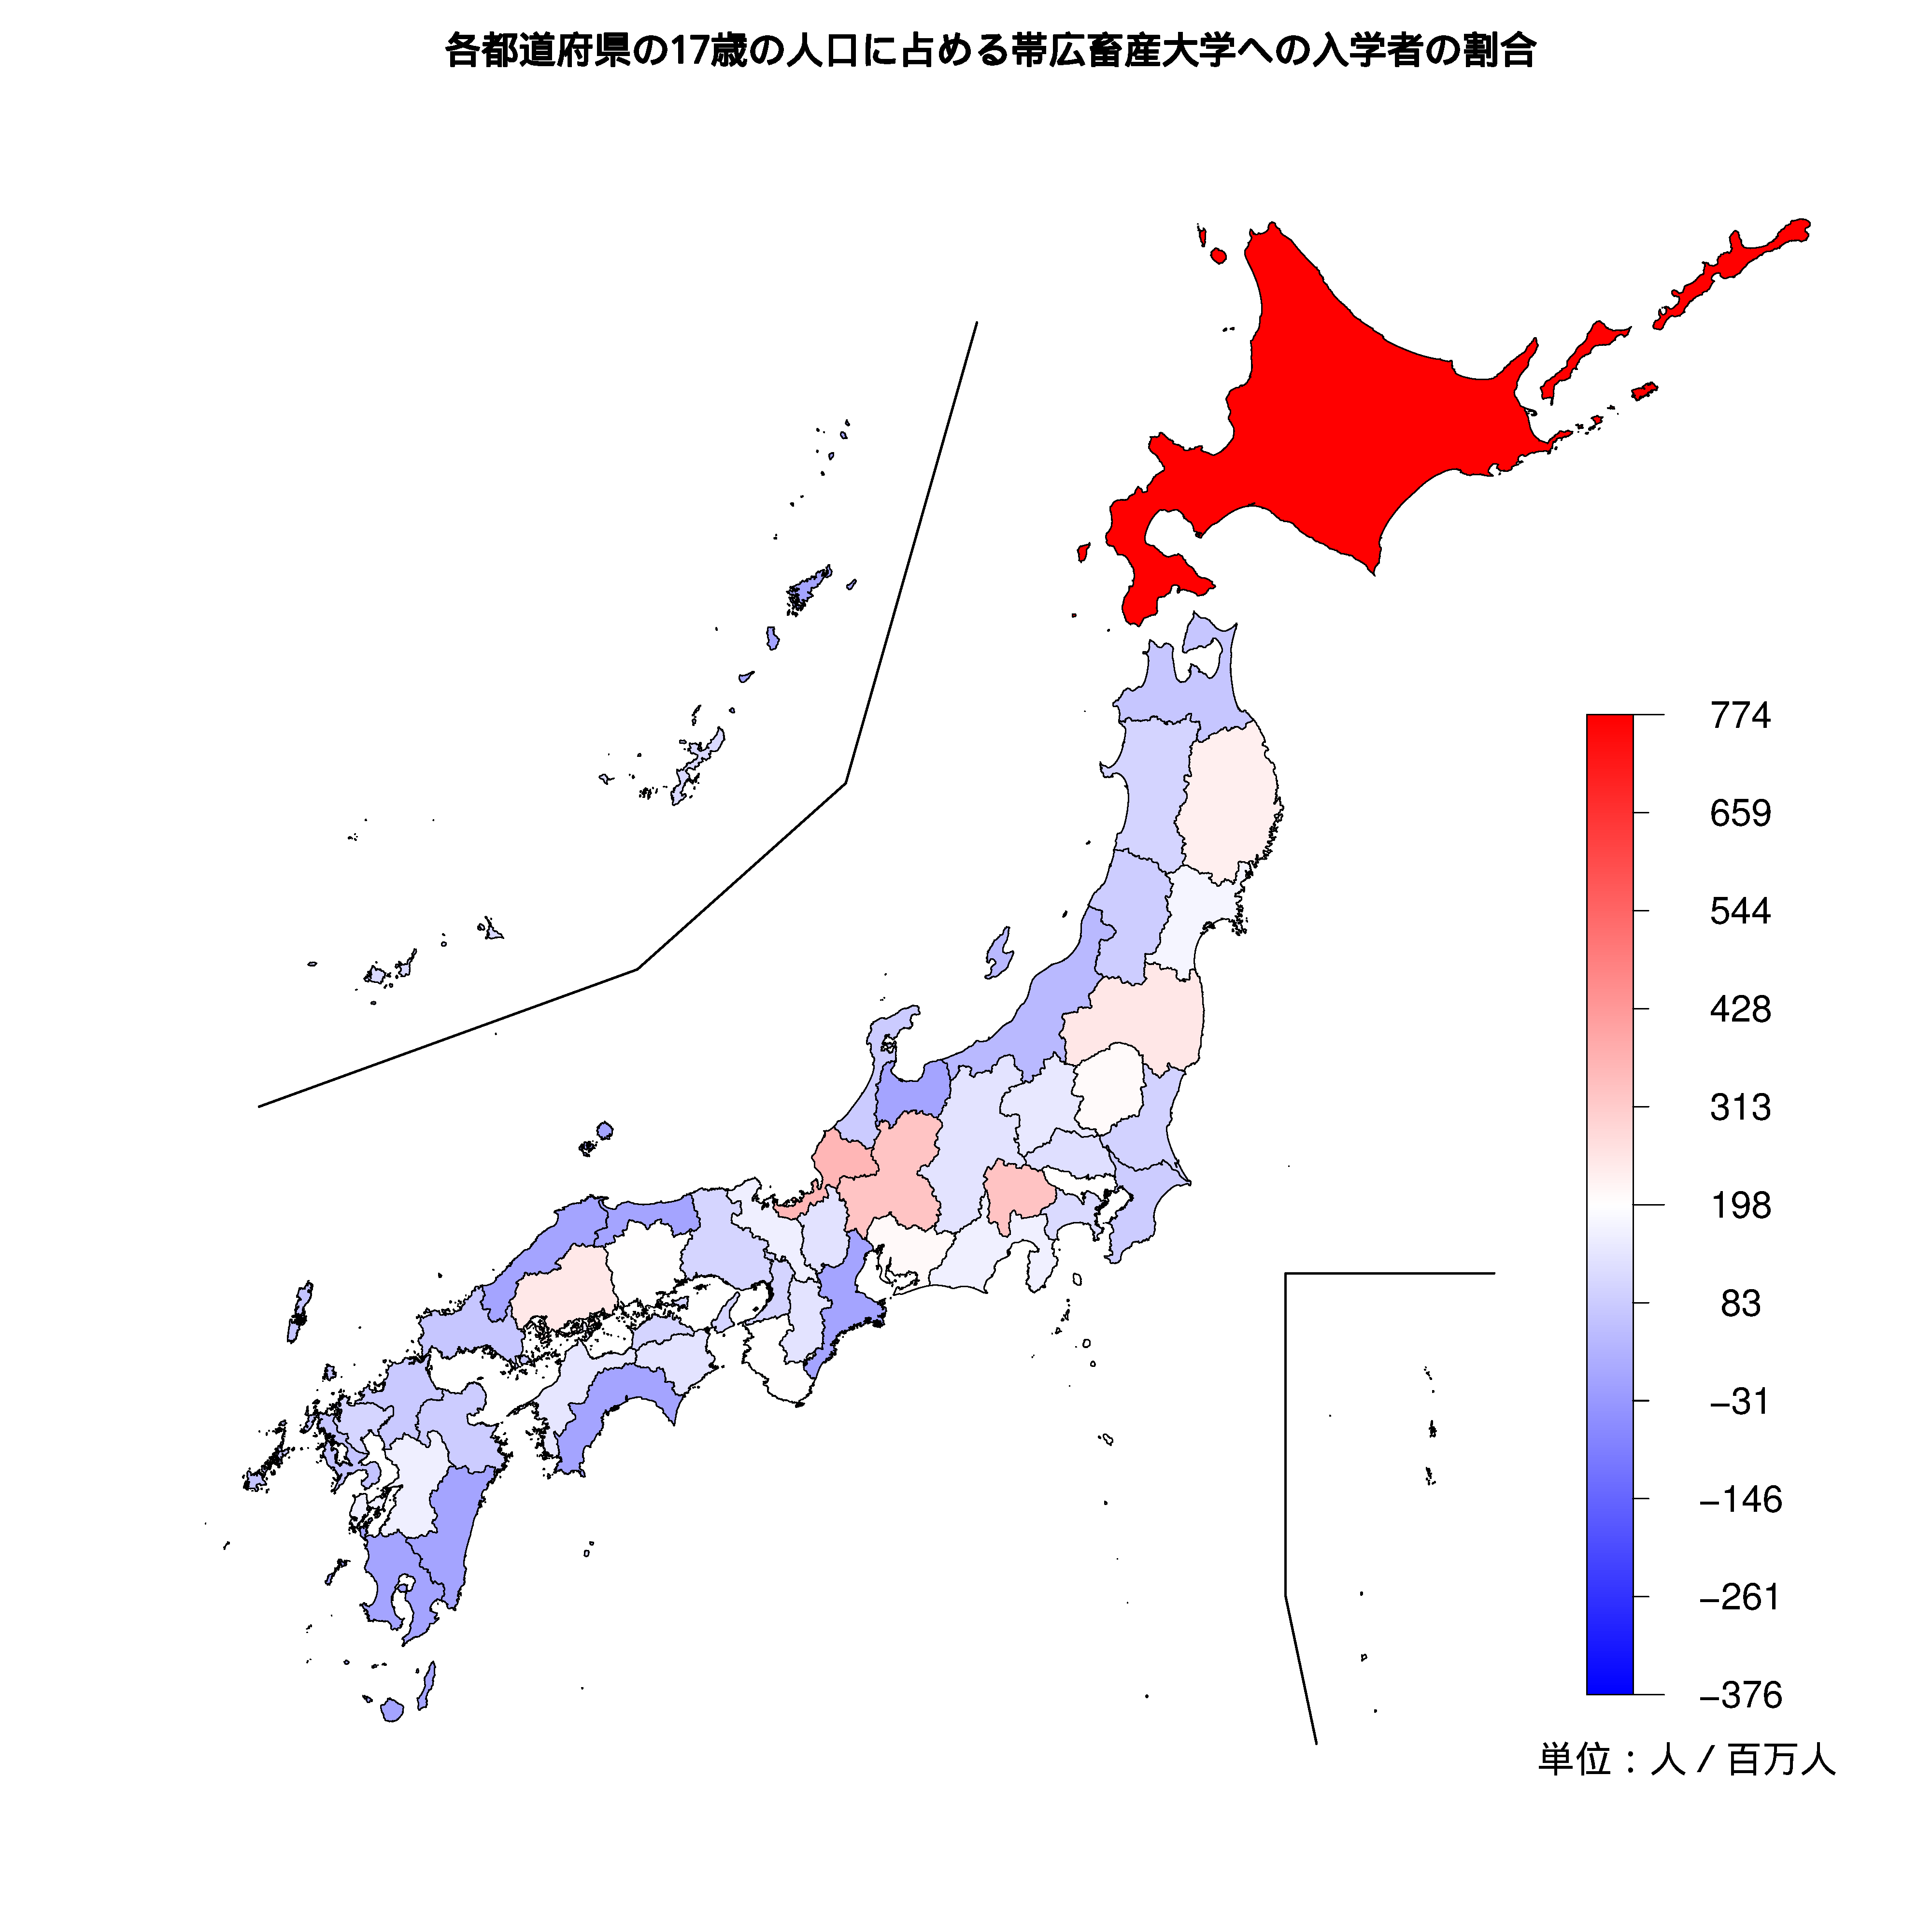 帯広畜産大学への入学者が多い都道府県の色分け地図